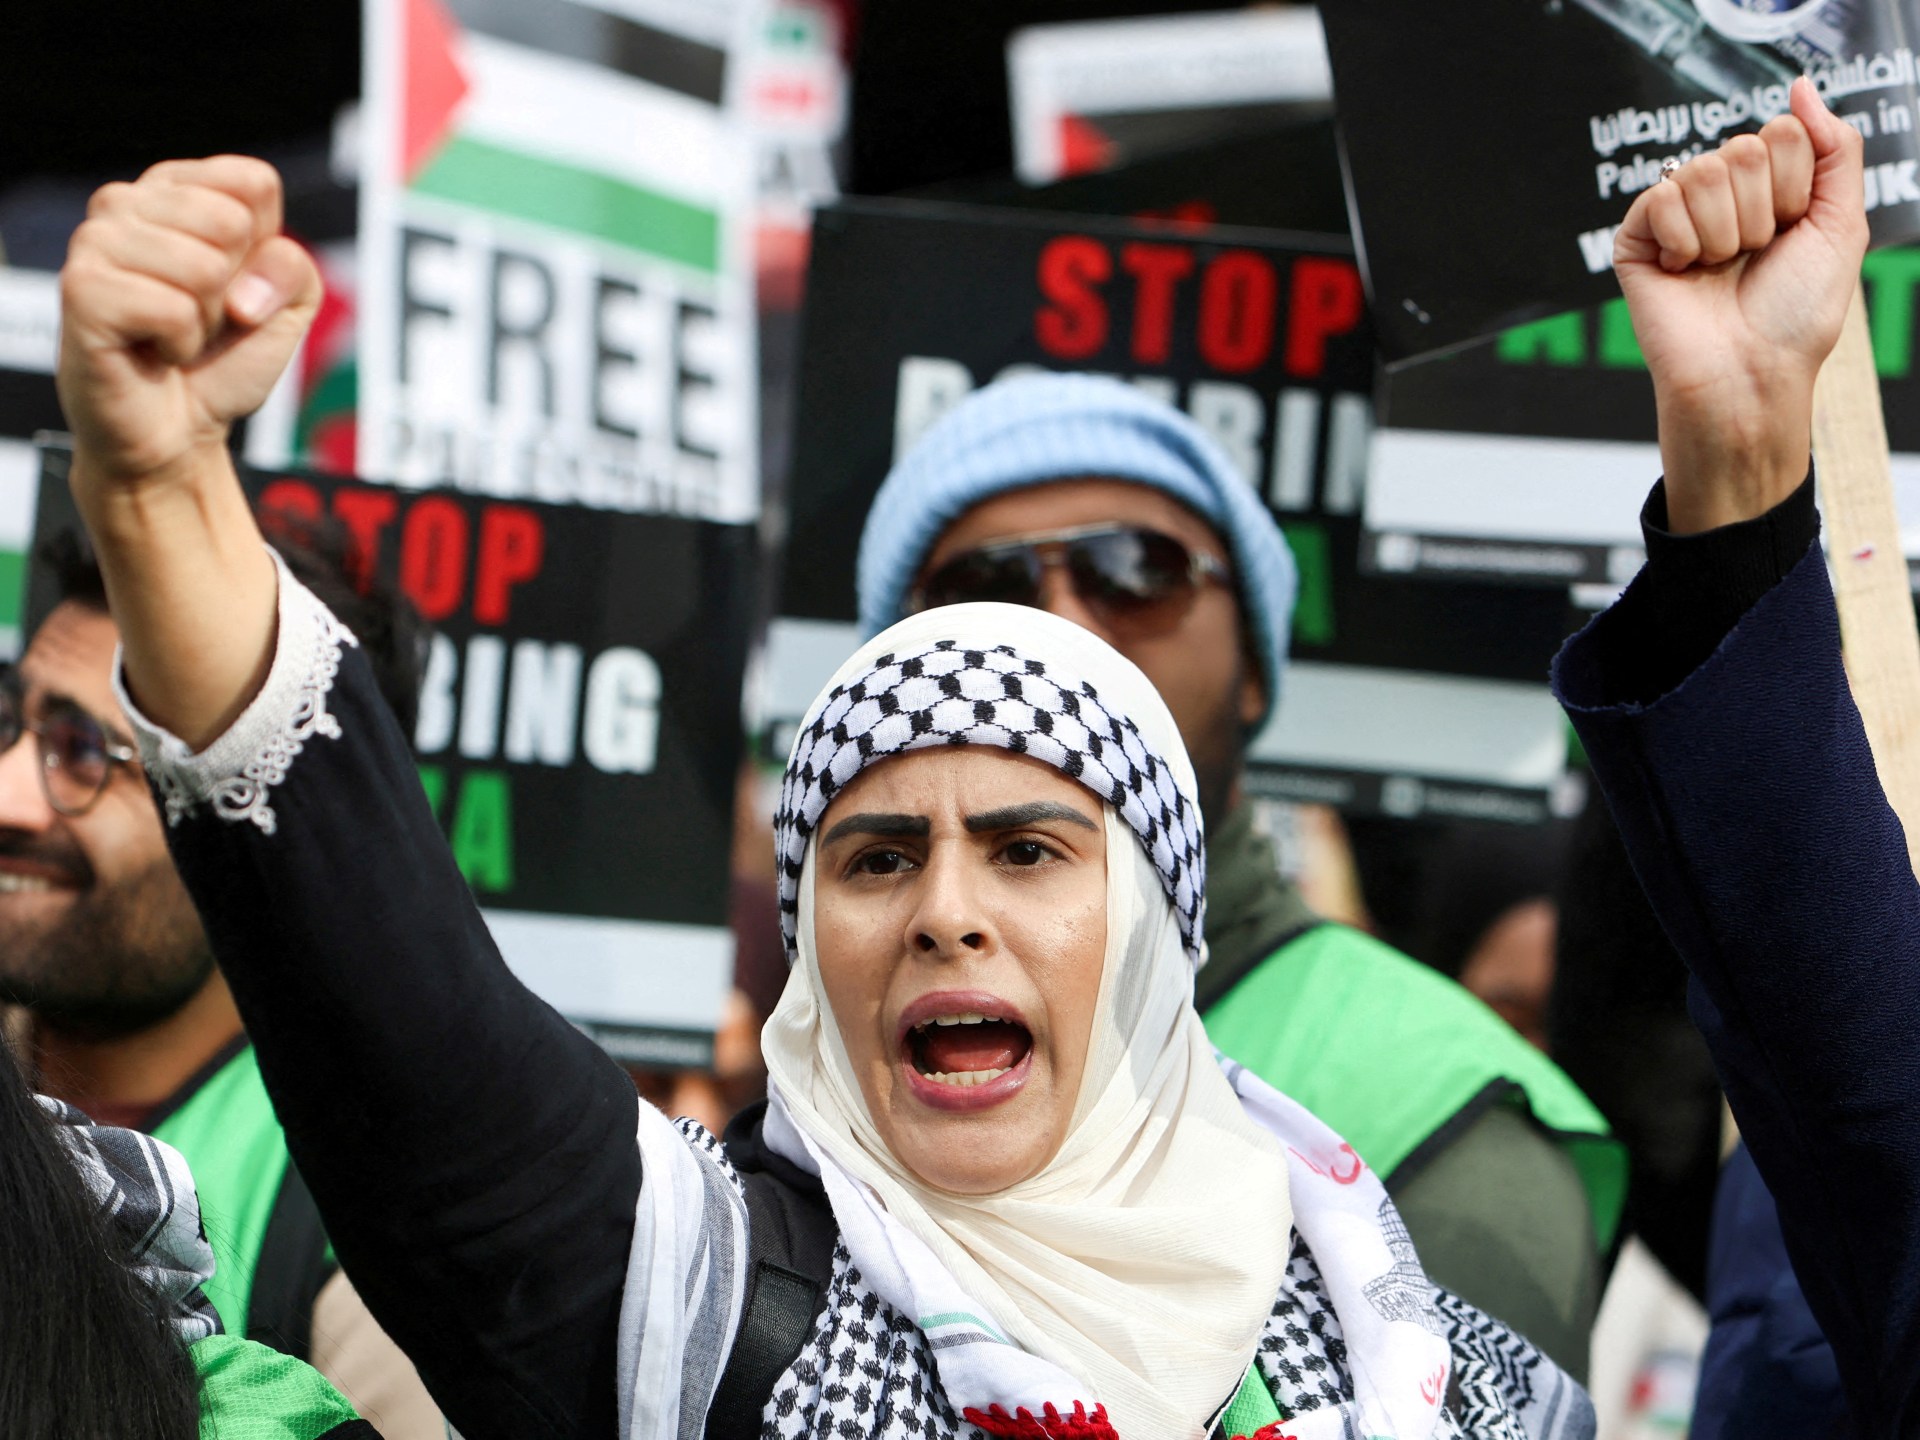 بريطانيا تتهم امرأتين “بالإرهاب” بعد احتجاج مؤيد للفلسطينيين | أخبار – البوكس نيوز